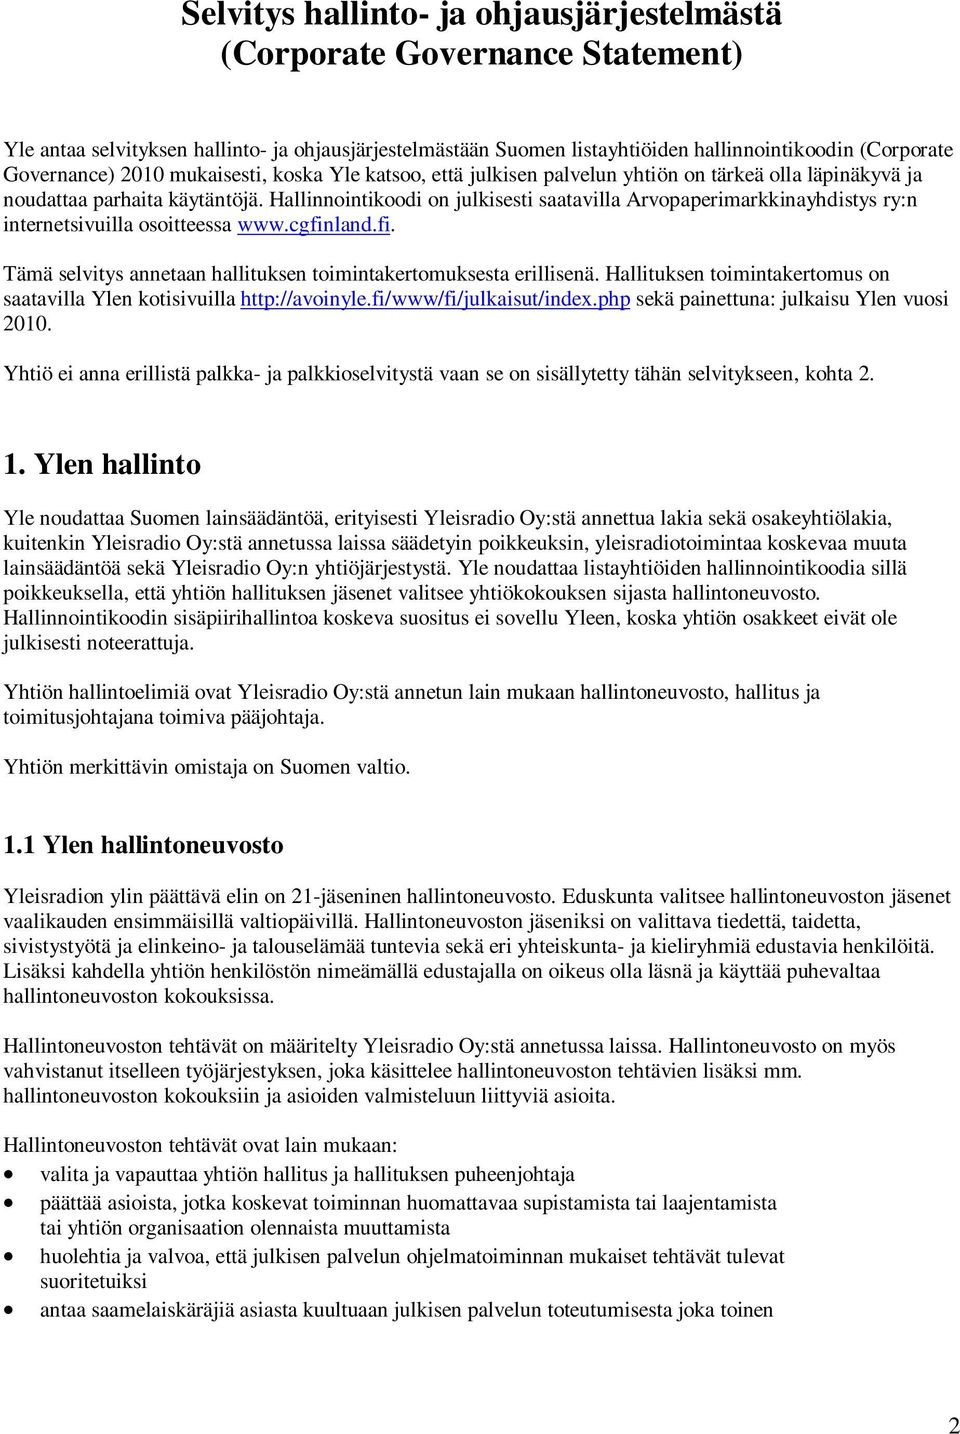 Hallinnointikoodi on julkisesti saatavilla Arvopaperimarkkinayhdistys ry:n internetsivuilla osoitteessa www.cgfinland.fi. Tämä selvitys annetaan hallituksen toimintakertomuksesta erillisenä.